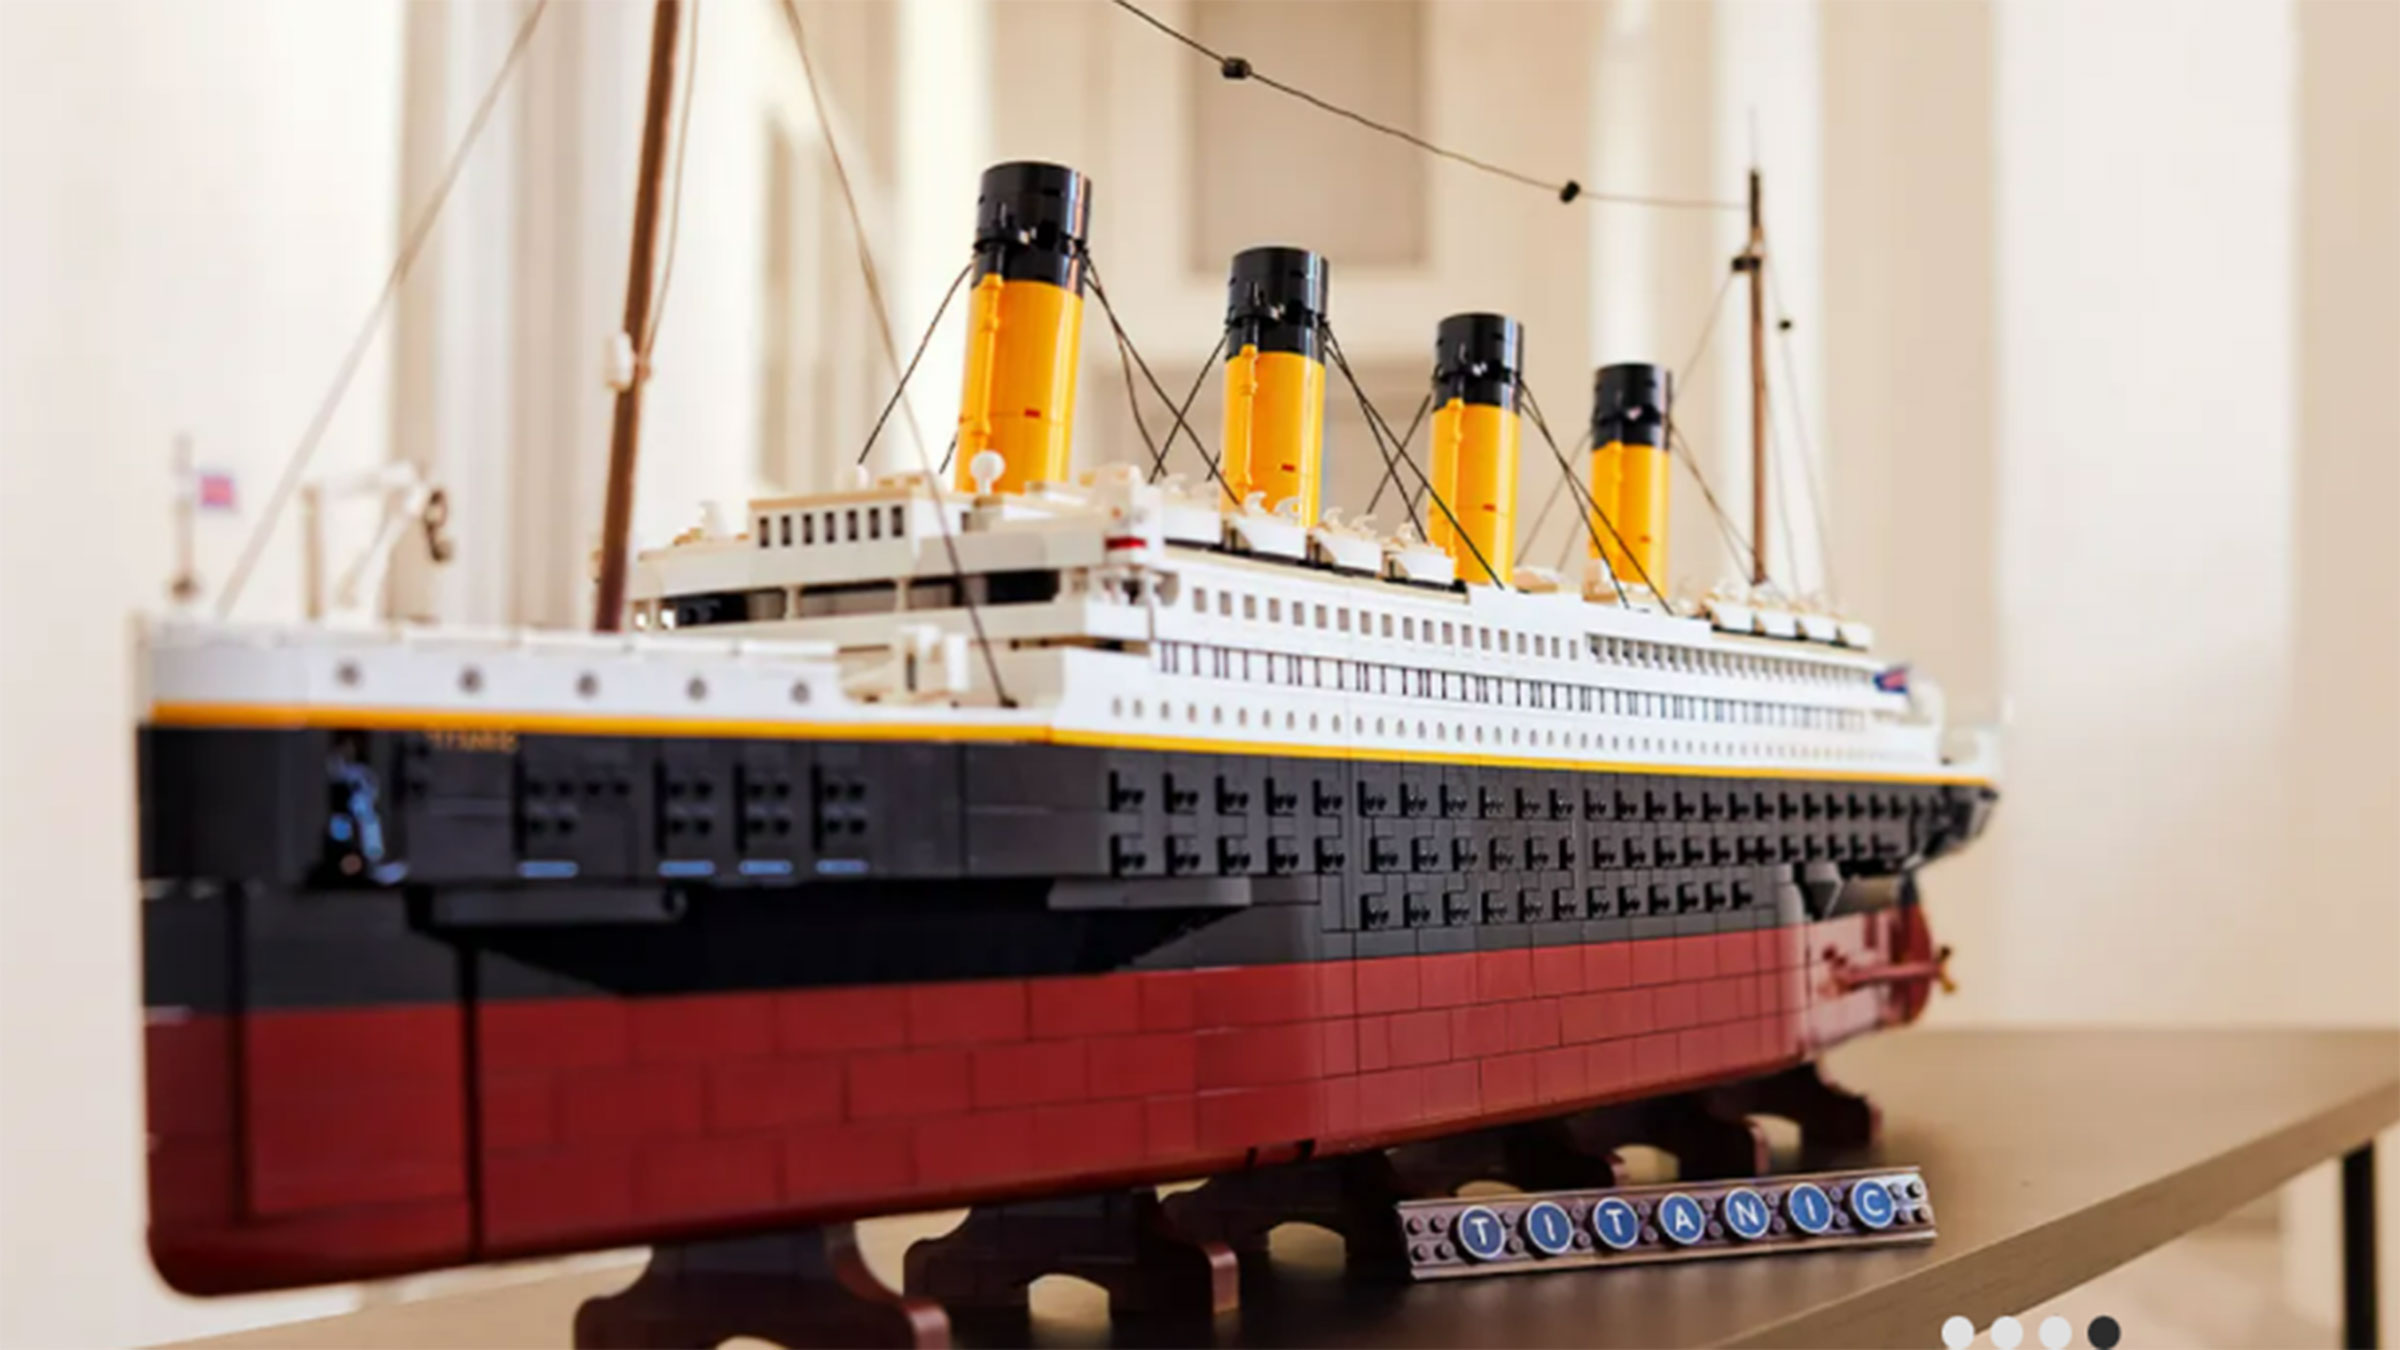 LEGO lanza el set más piezas y más de su historia, y es alucinante | Life - ComputerHoy.com